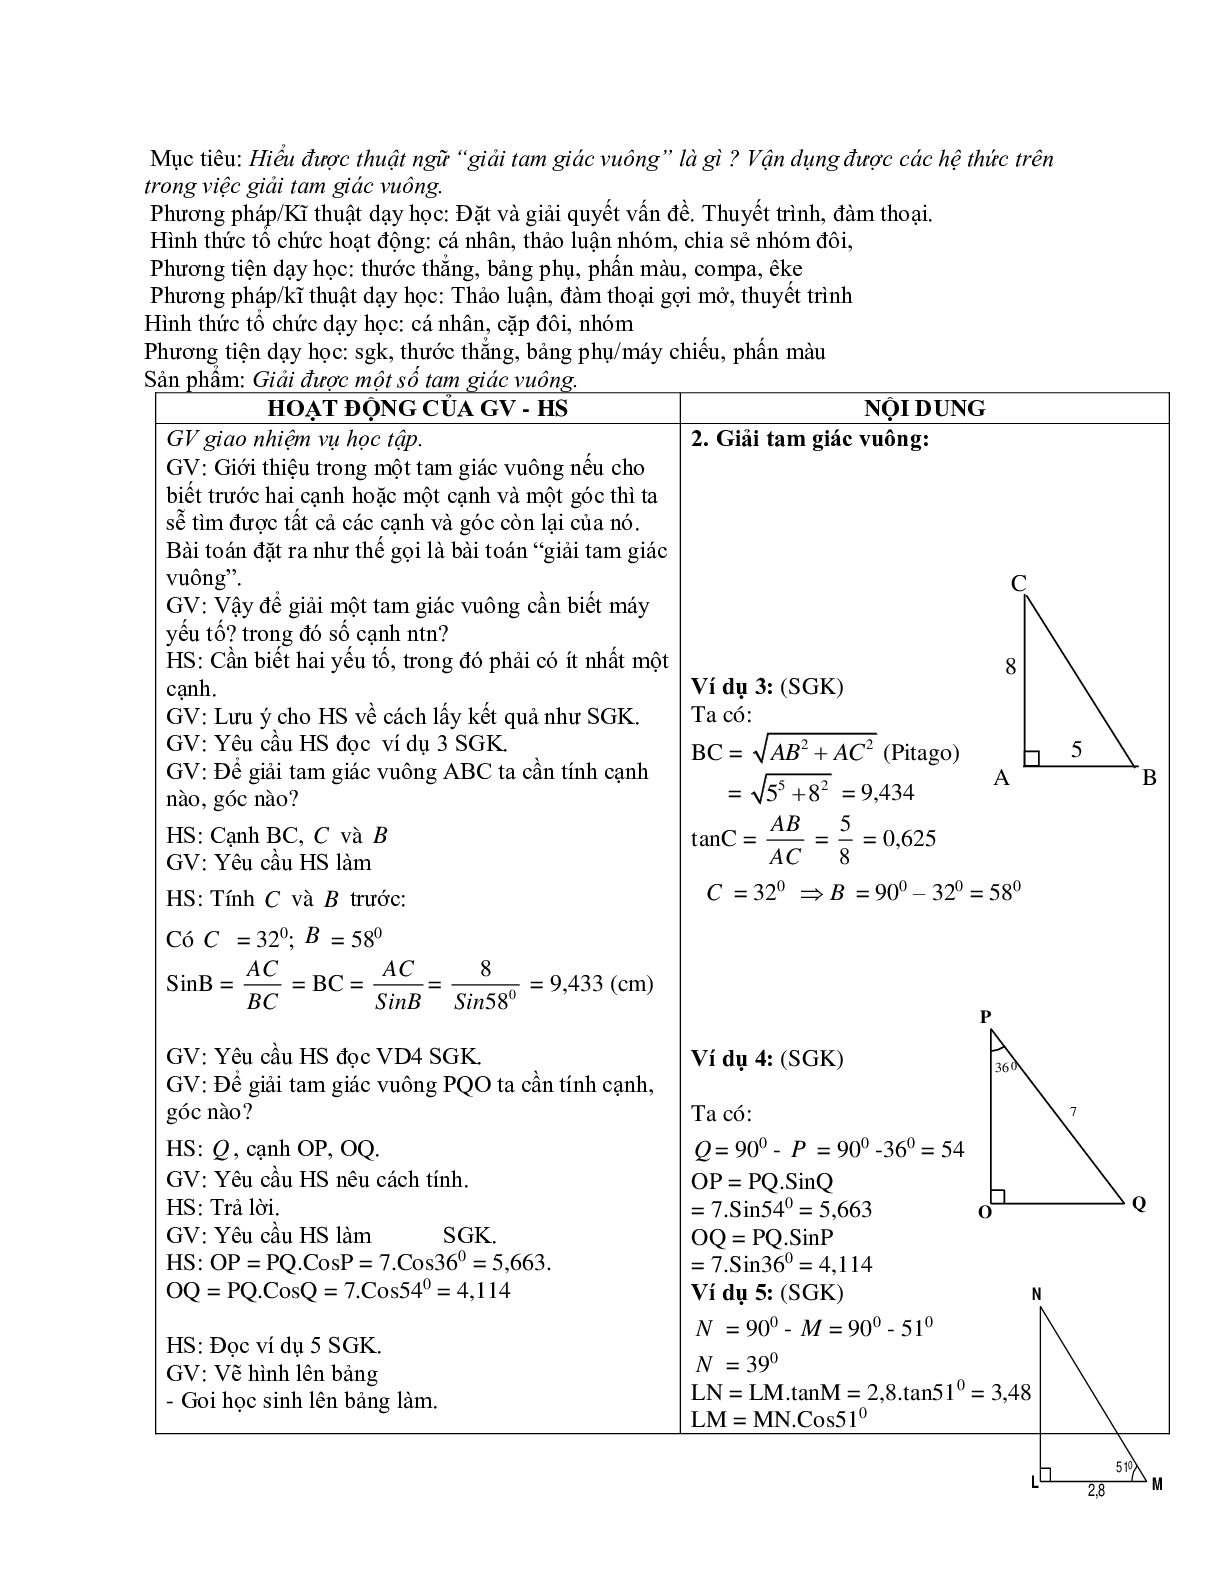 Giáo án Hình học 9 chương 1 bài 4: Một số hệ thức về cạnh và góc trong tam giác vuông mới nhất (trang 4)